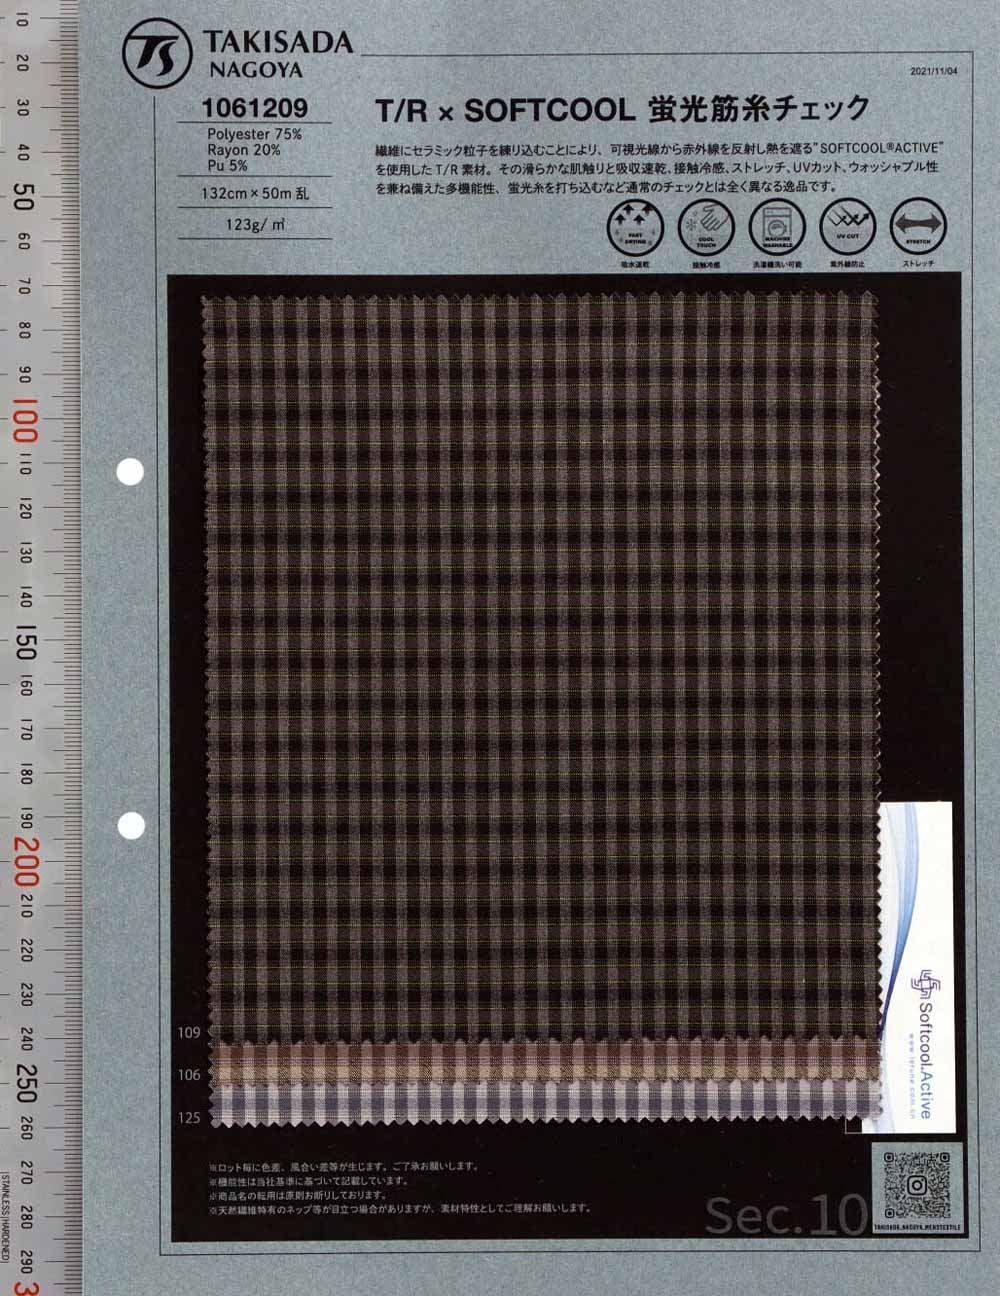 1061209 T / R × SOFTCOOL Verificação De Rosca Fluorescente[Têxtil / Tecido] Takisada Nagoya